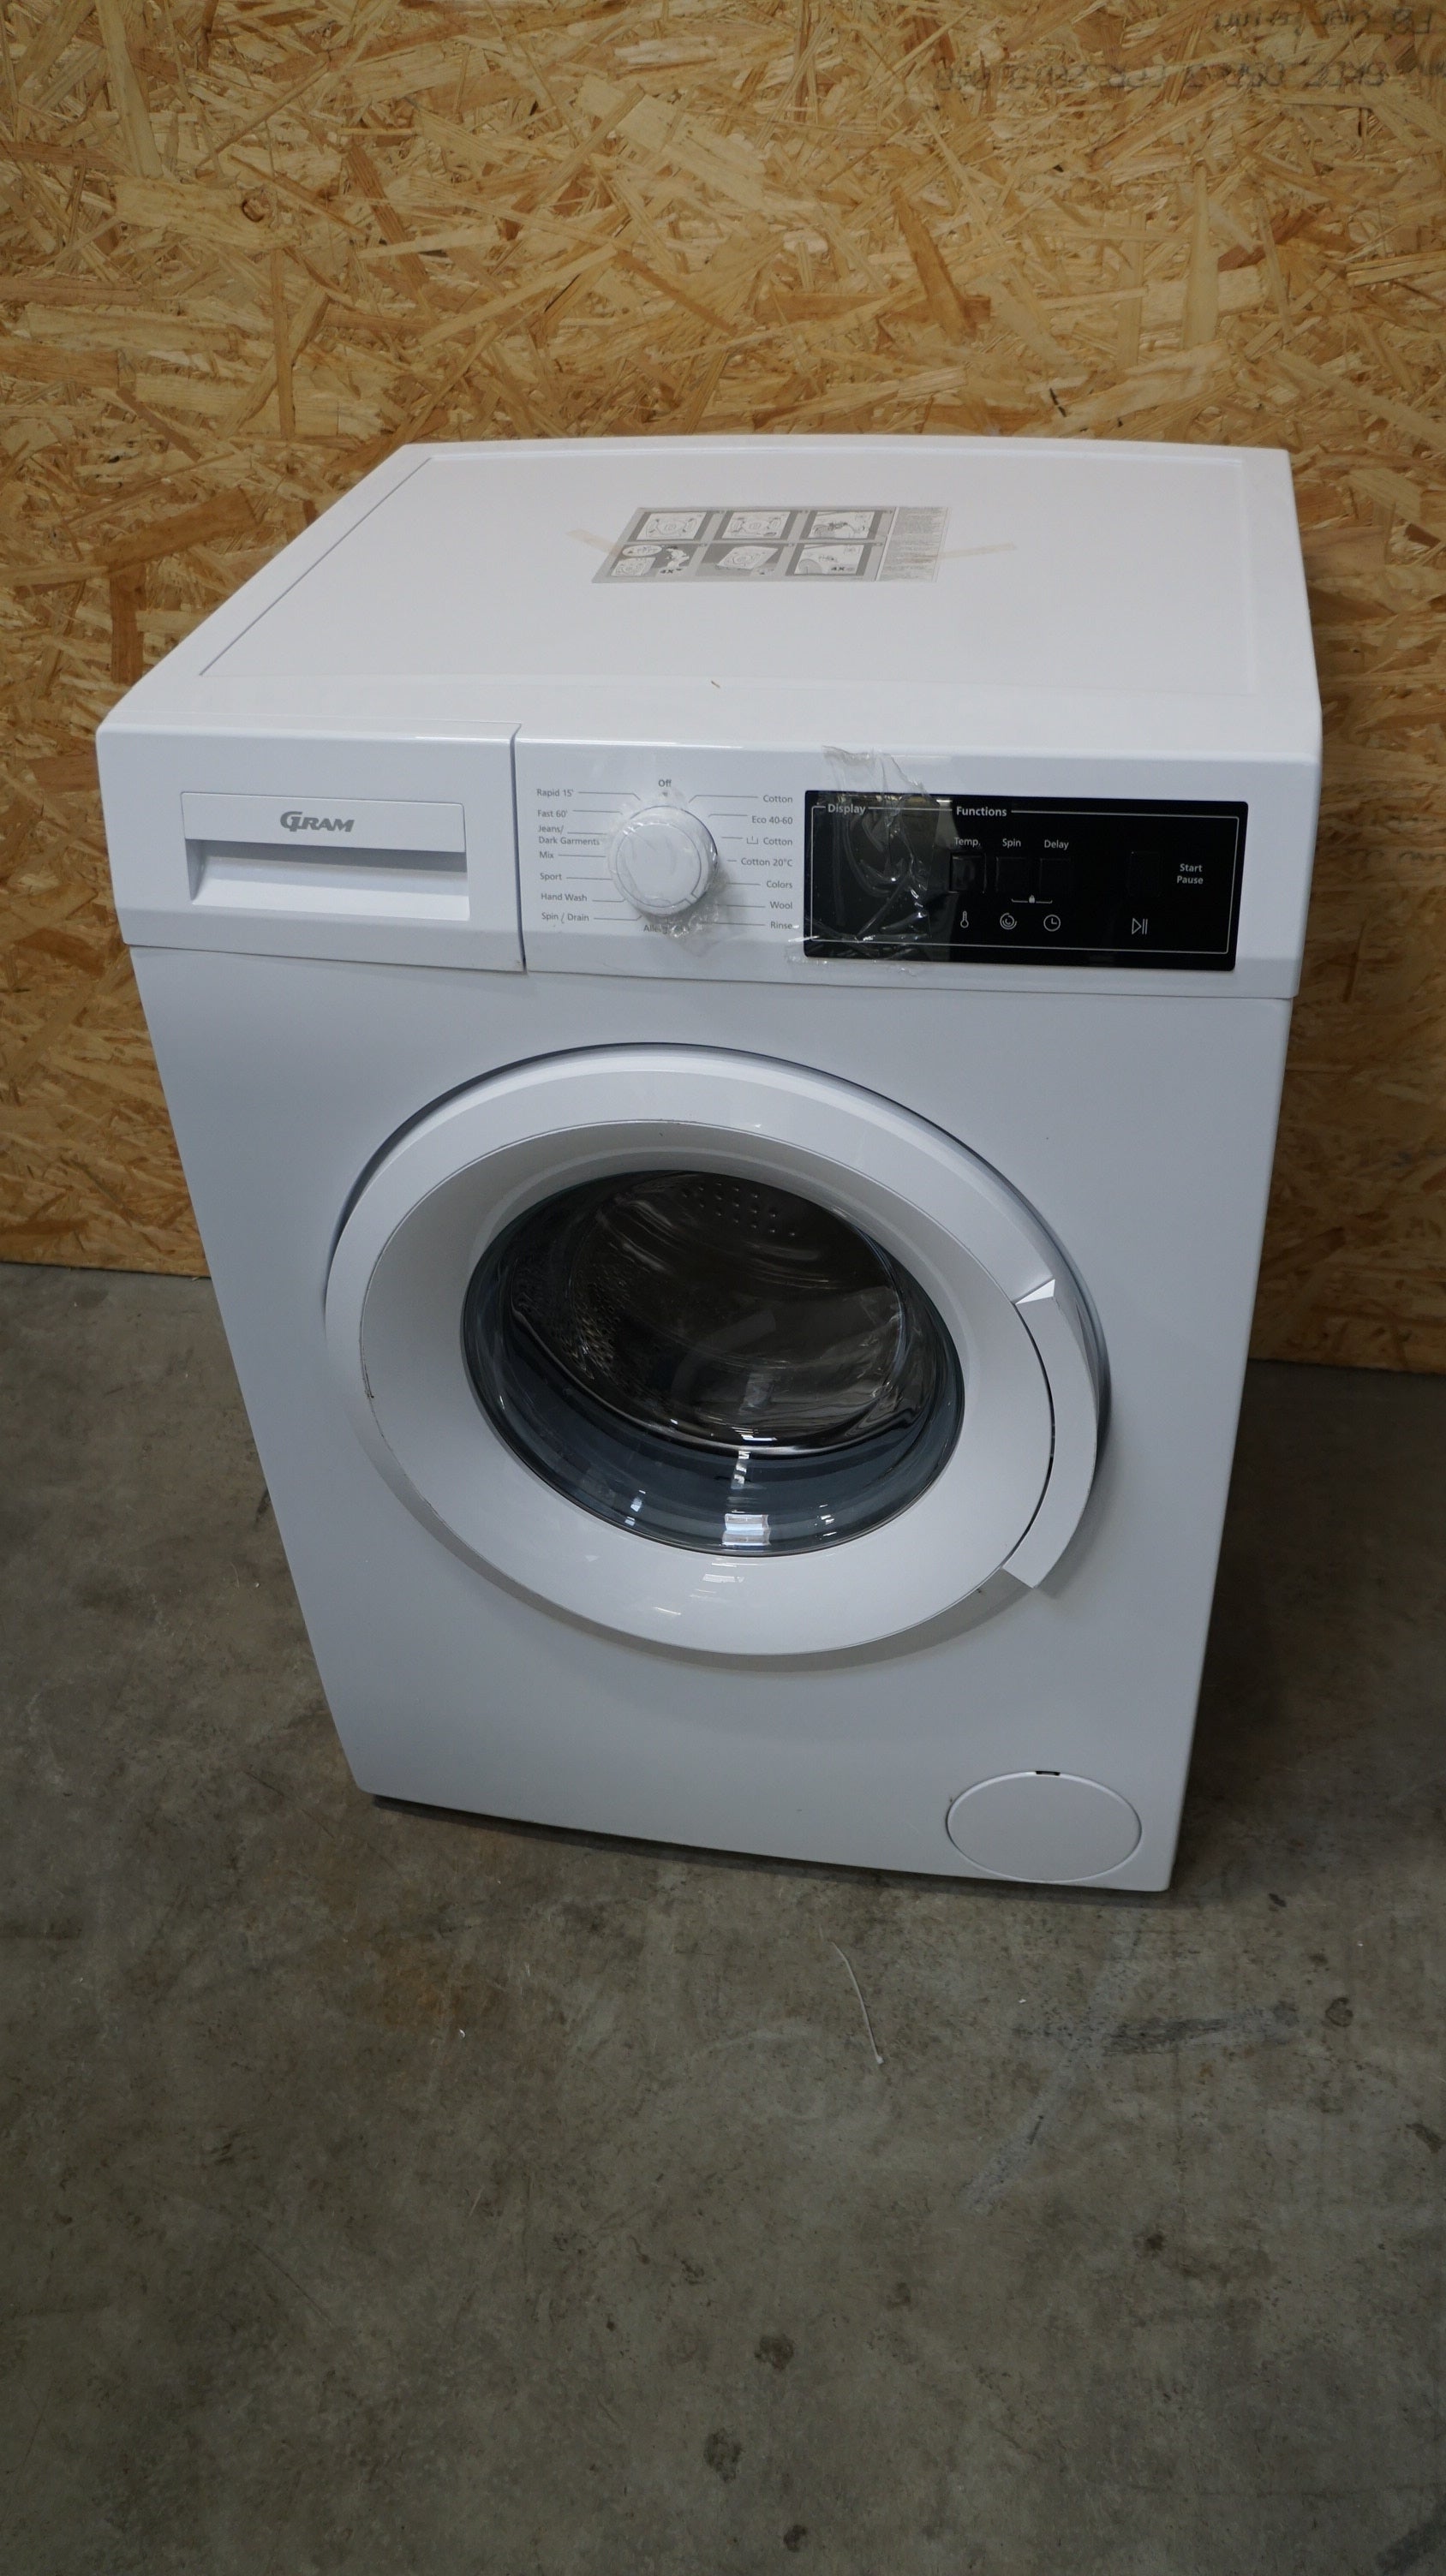 Gram vaskemaskine WDE70714-90/01 - D09148